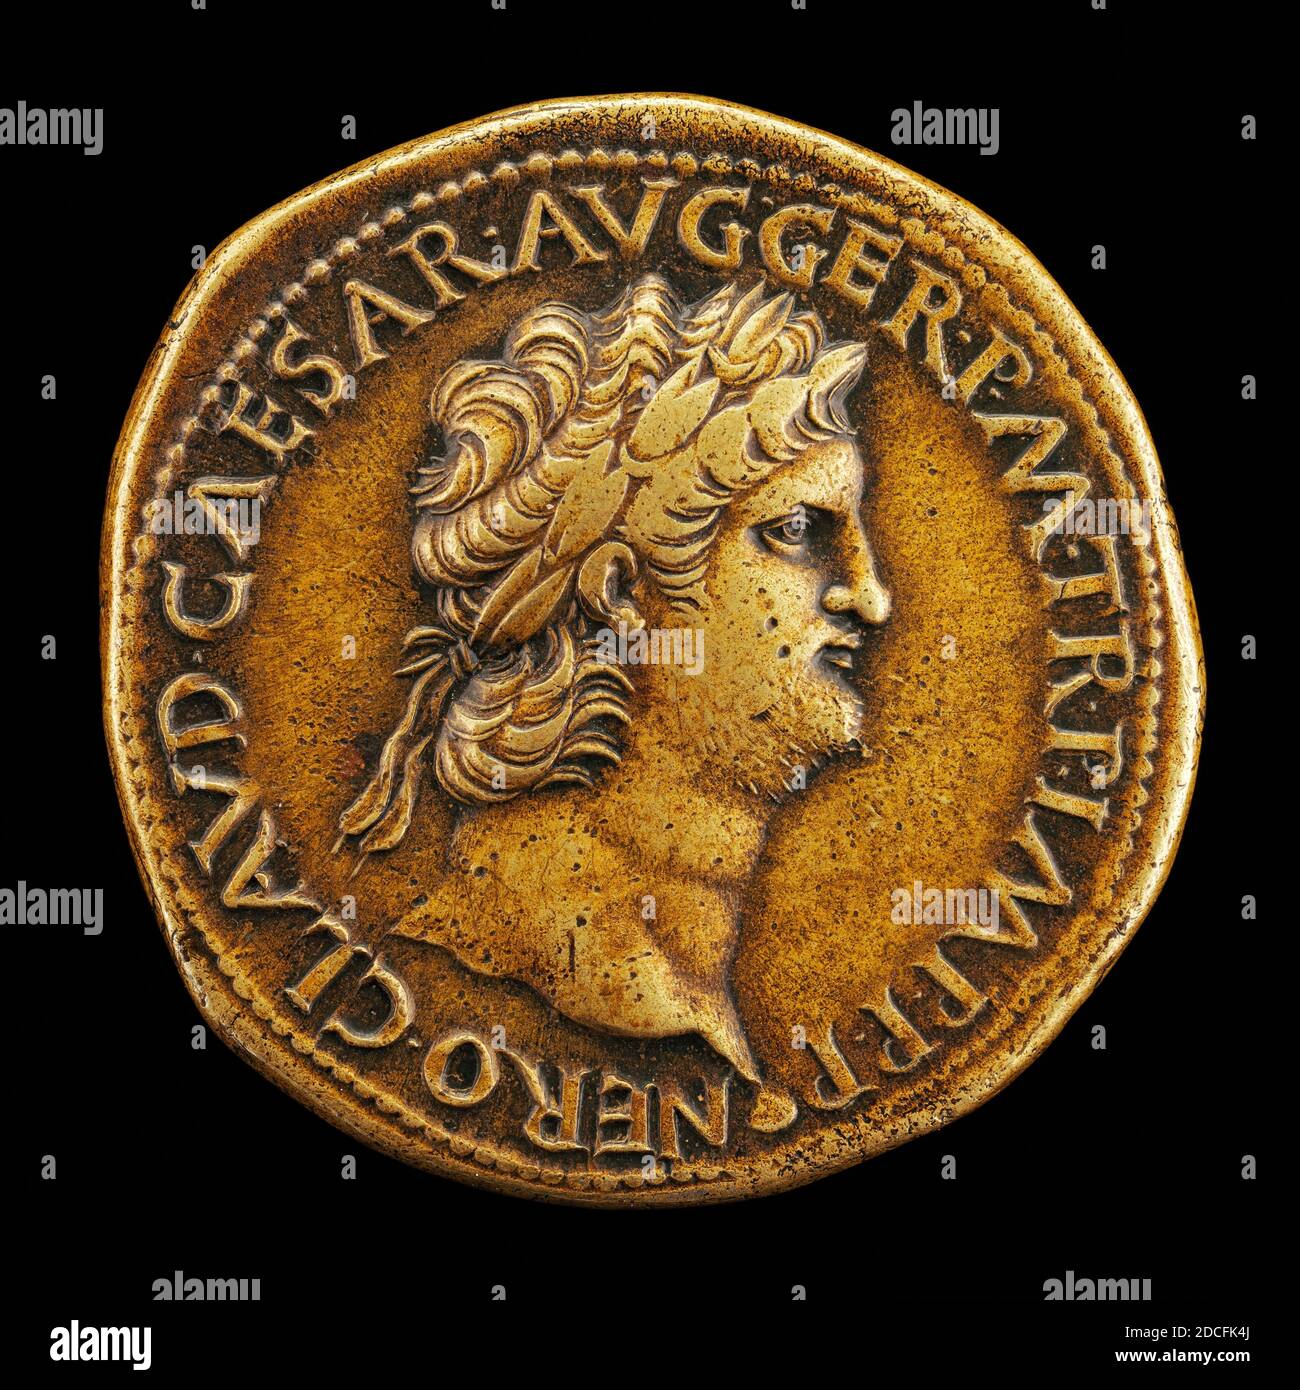 Giovanni da Cavino, (artist), Paduan, 1500 - 1570, Nero, A.D. 37-68, Roman Emperor A.D. 54, bronze/Struck, overall (diameter): 3.55 cm (1 3/8 in.), gross weight: 24.07 gr (0.053 lb.), axis: 7:00 Stock Photo